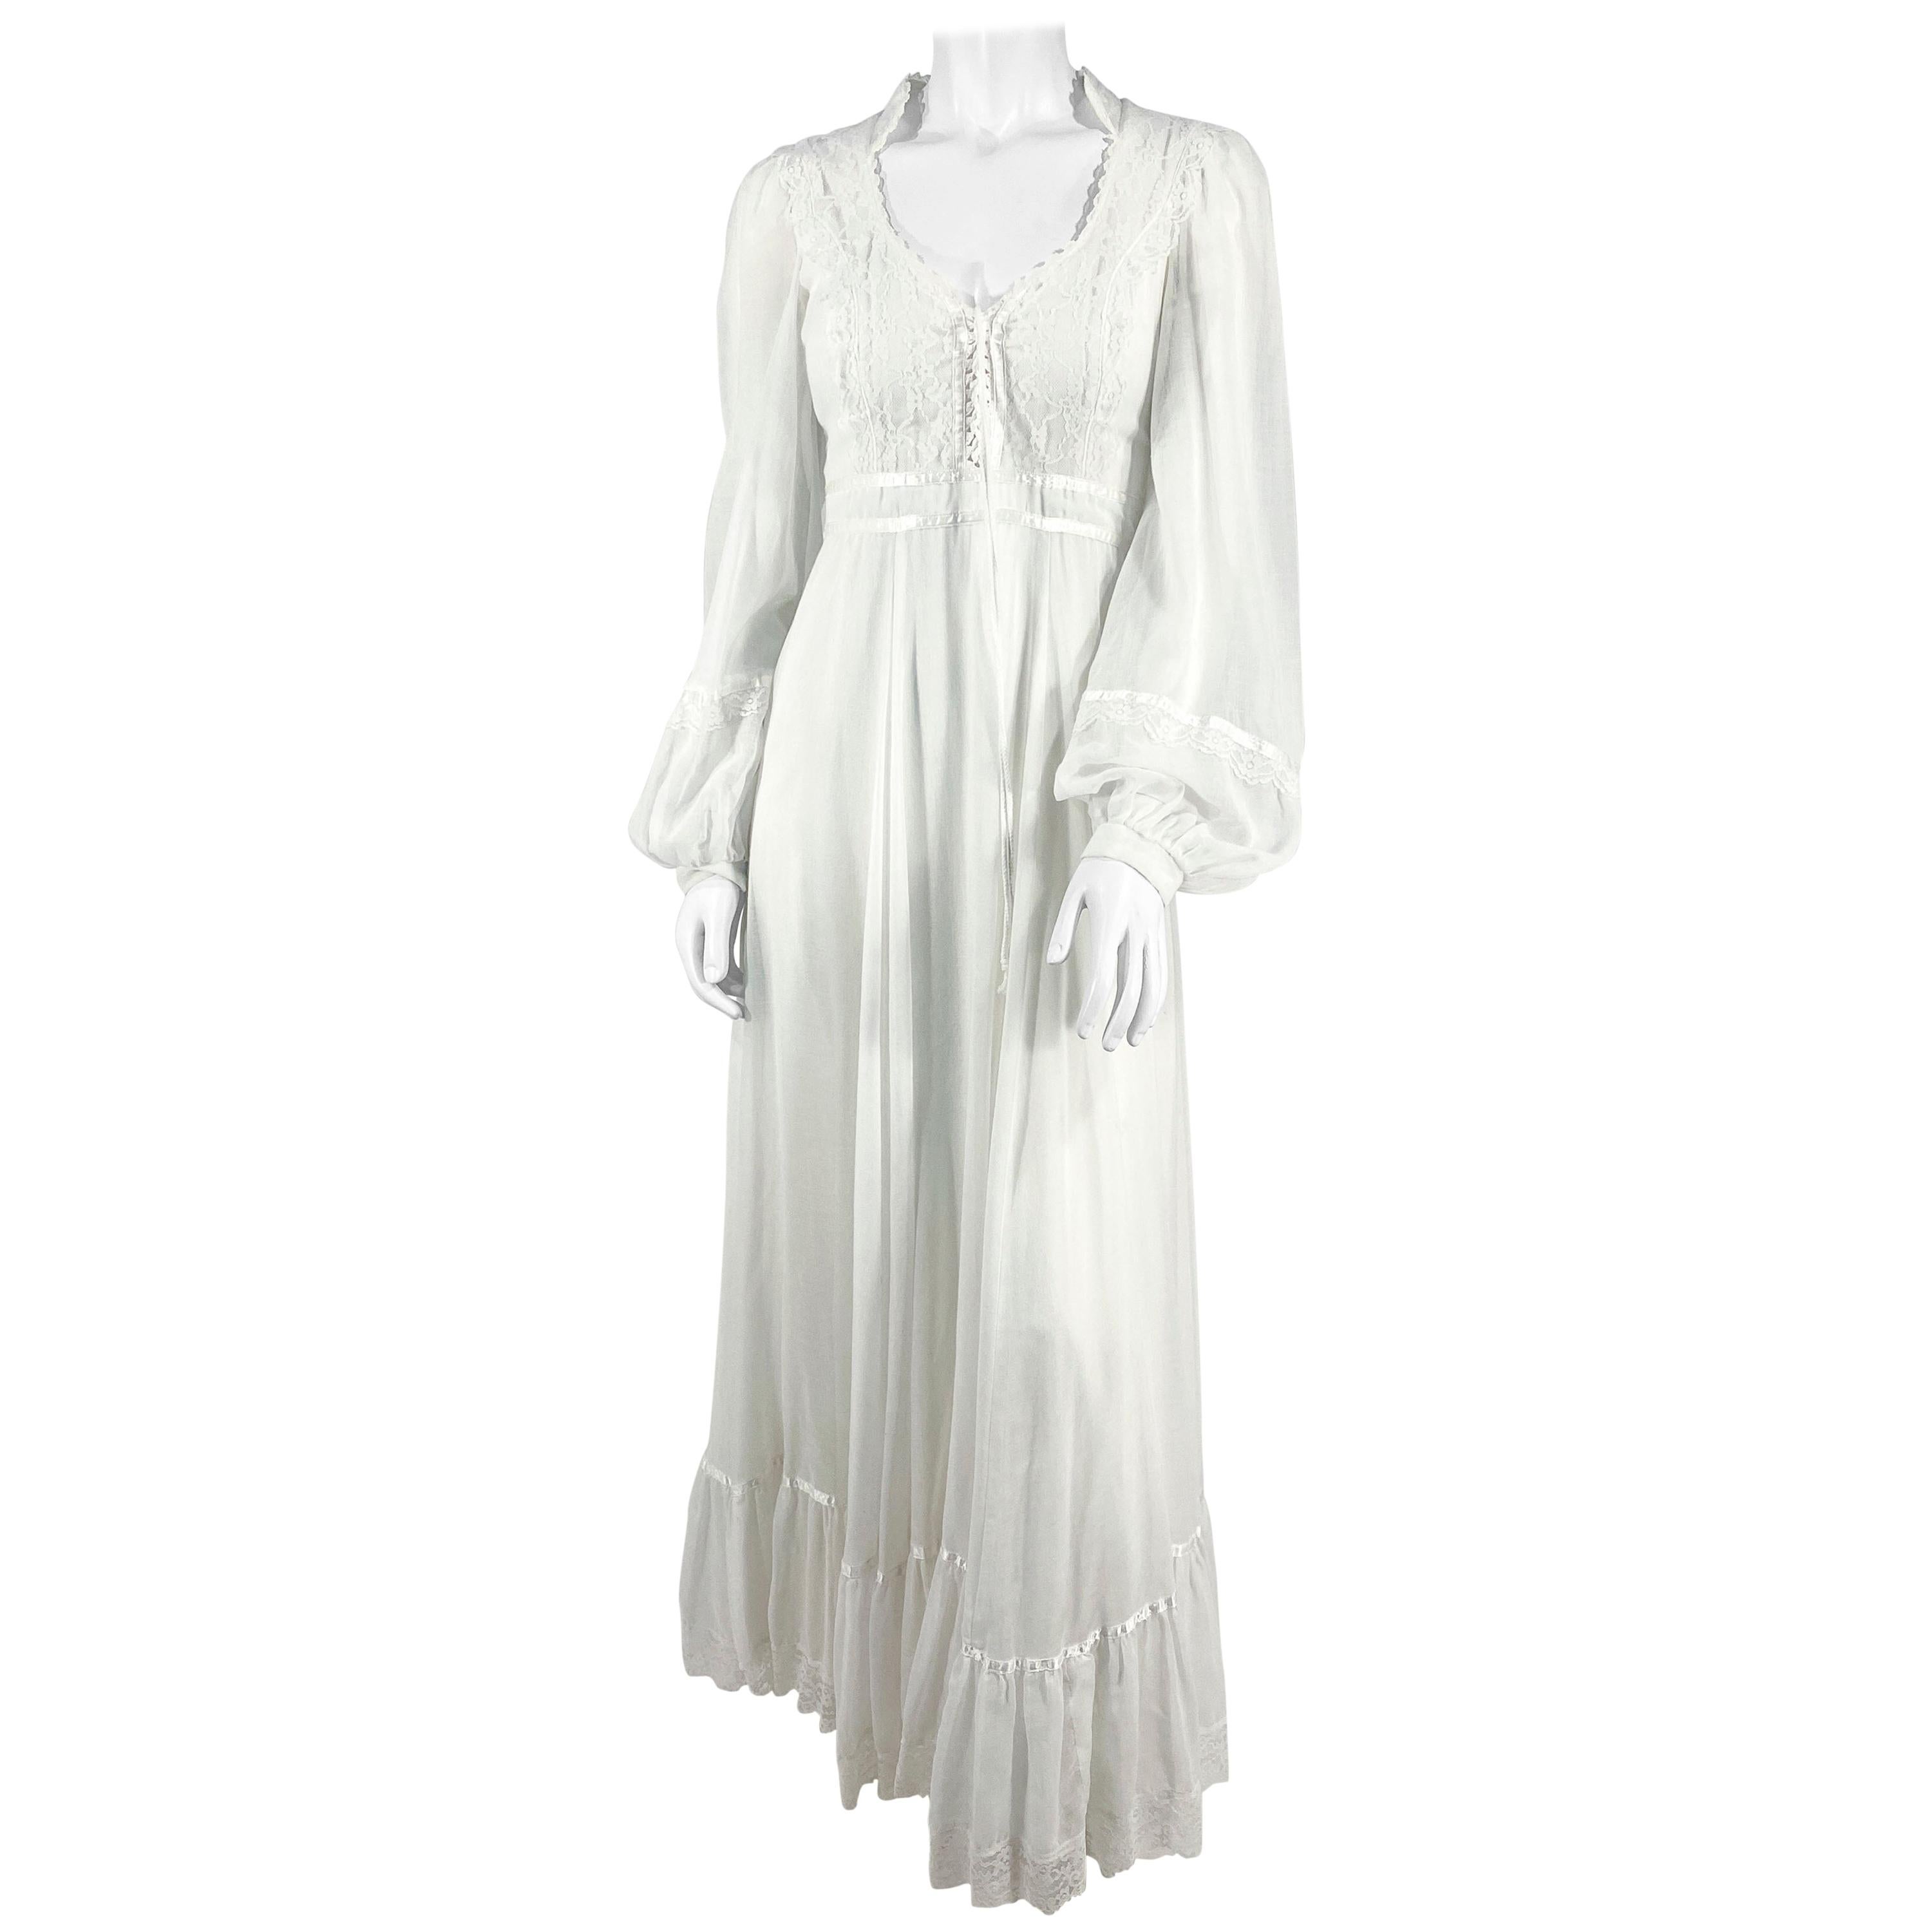 1970s Gunne Sax White Cotton Cottage Dress